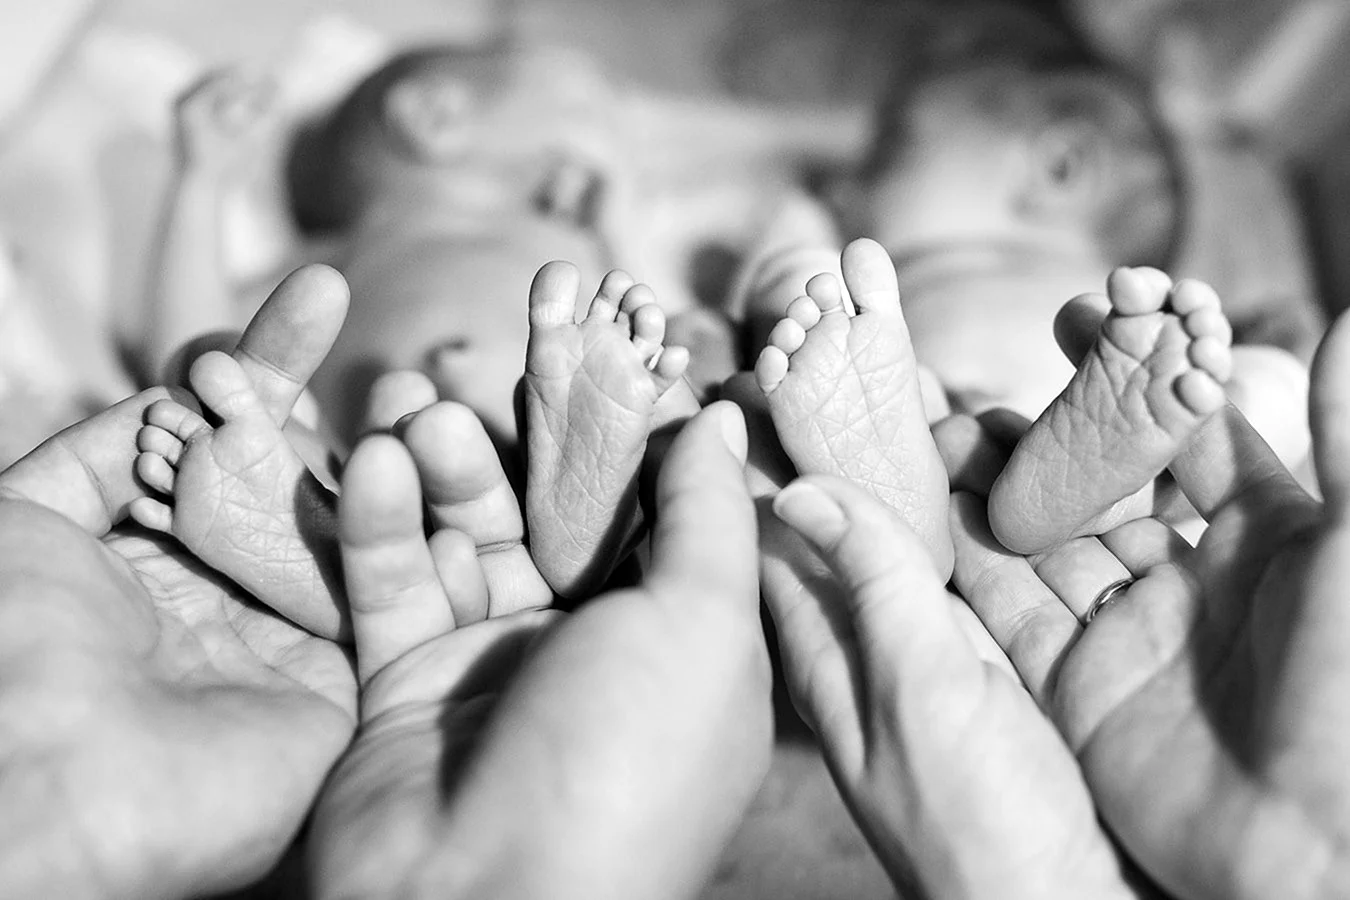 Ножки новорожденных близнецов